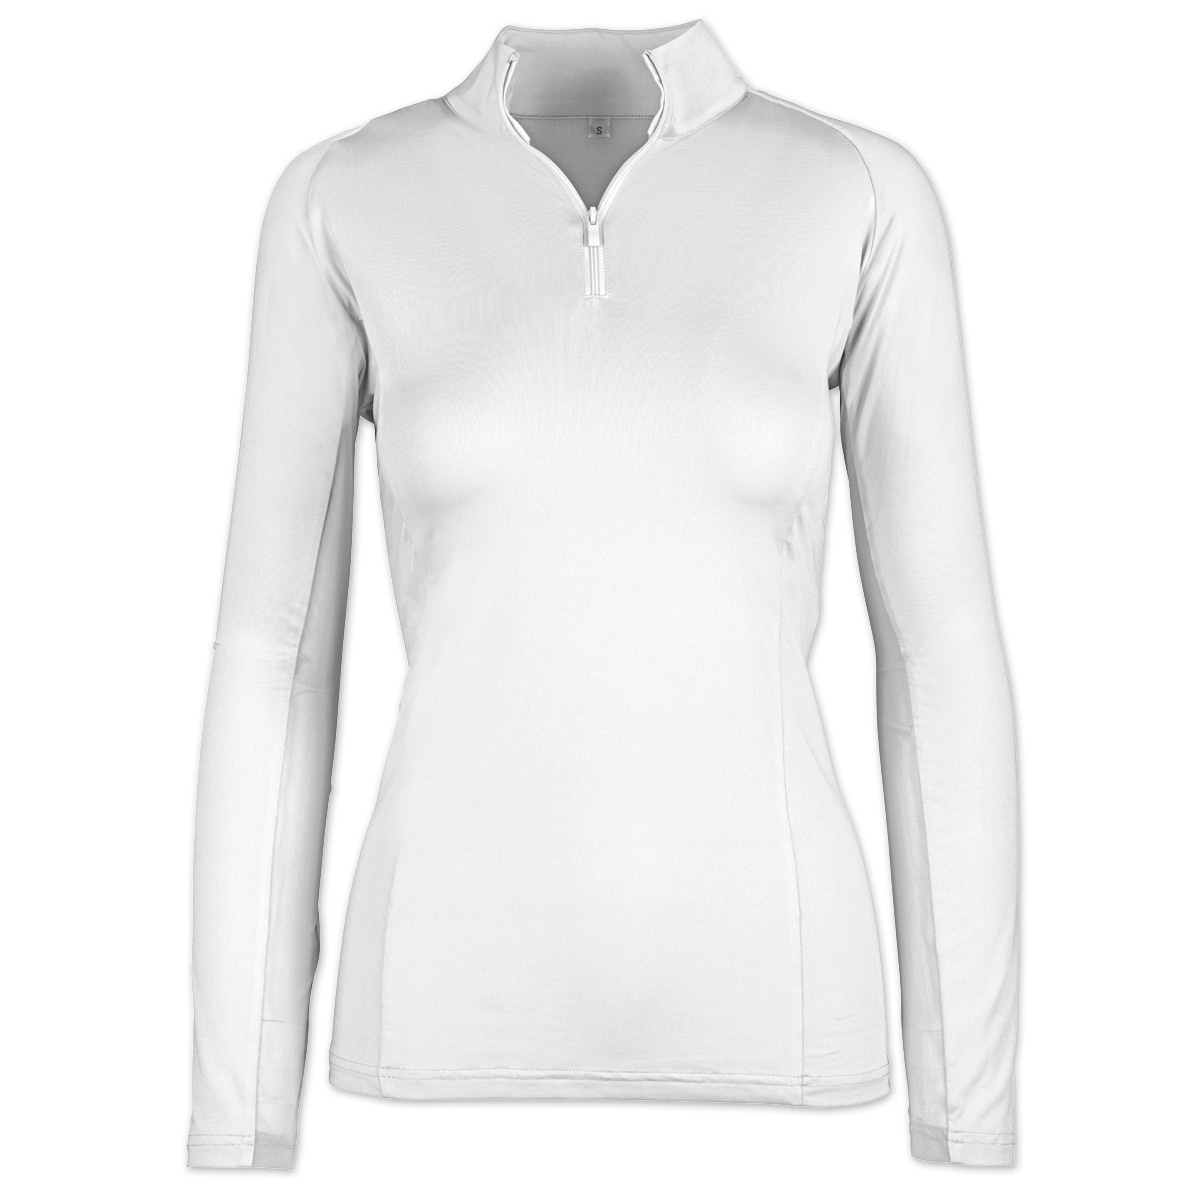 Piper SmartCore™ Long Sleeve ¼ Zip Sun Shirt- Clearance!